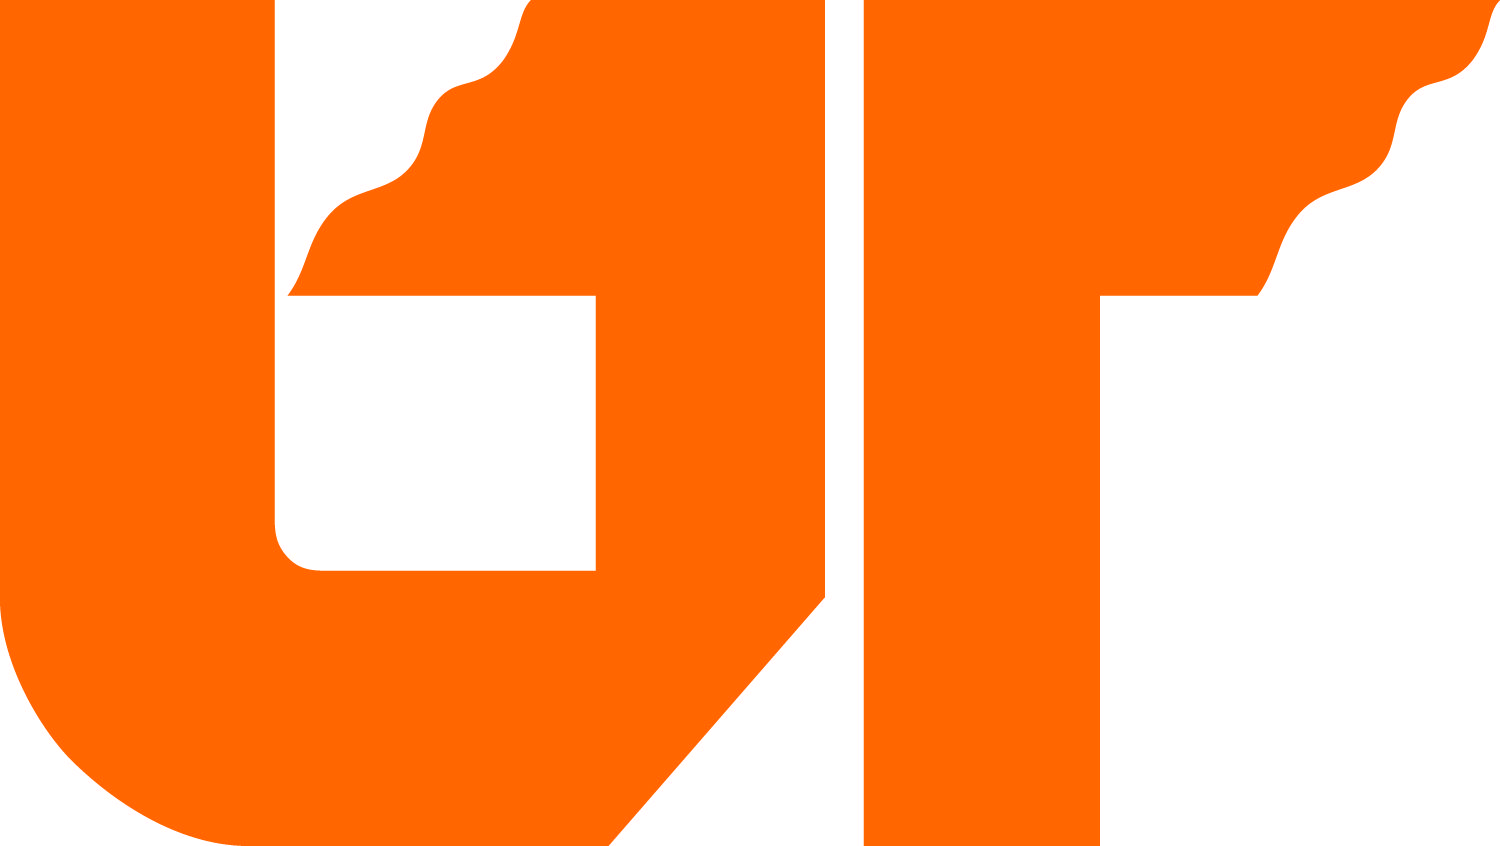 Utk Logo - Graphic Identity Standards